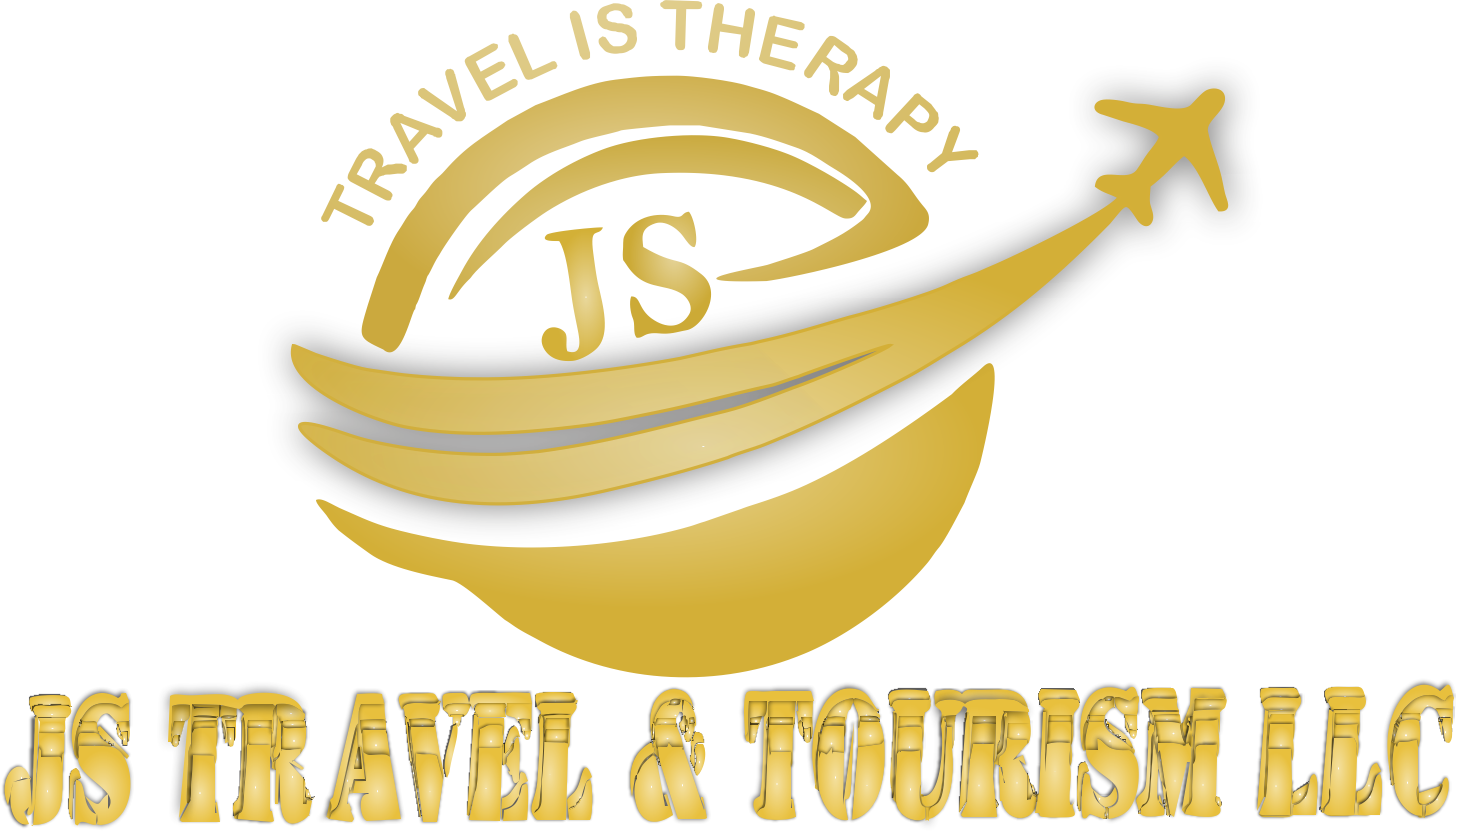 js tours travels